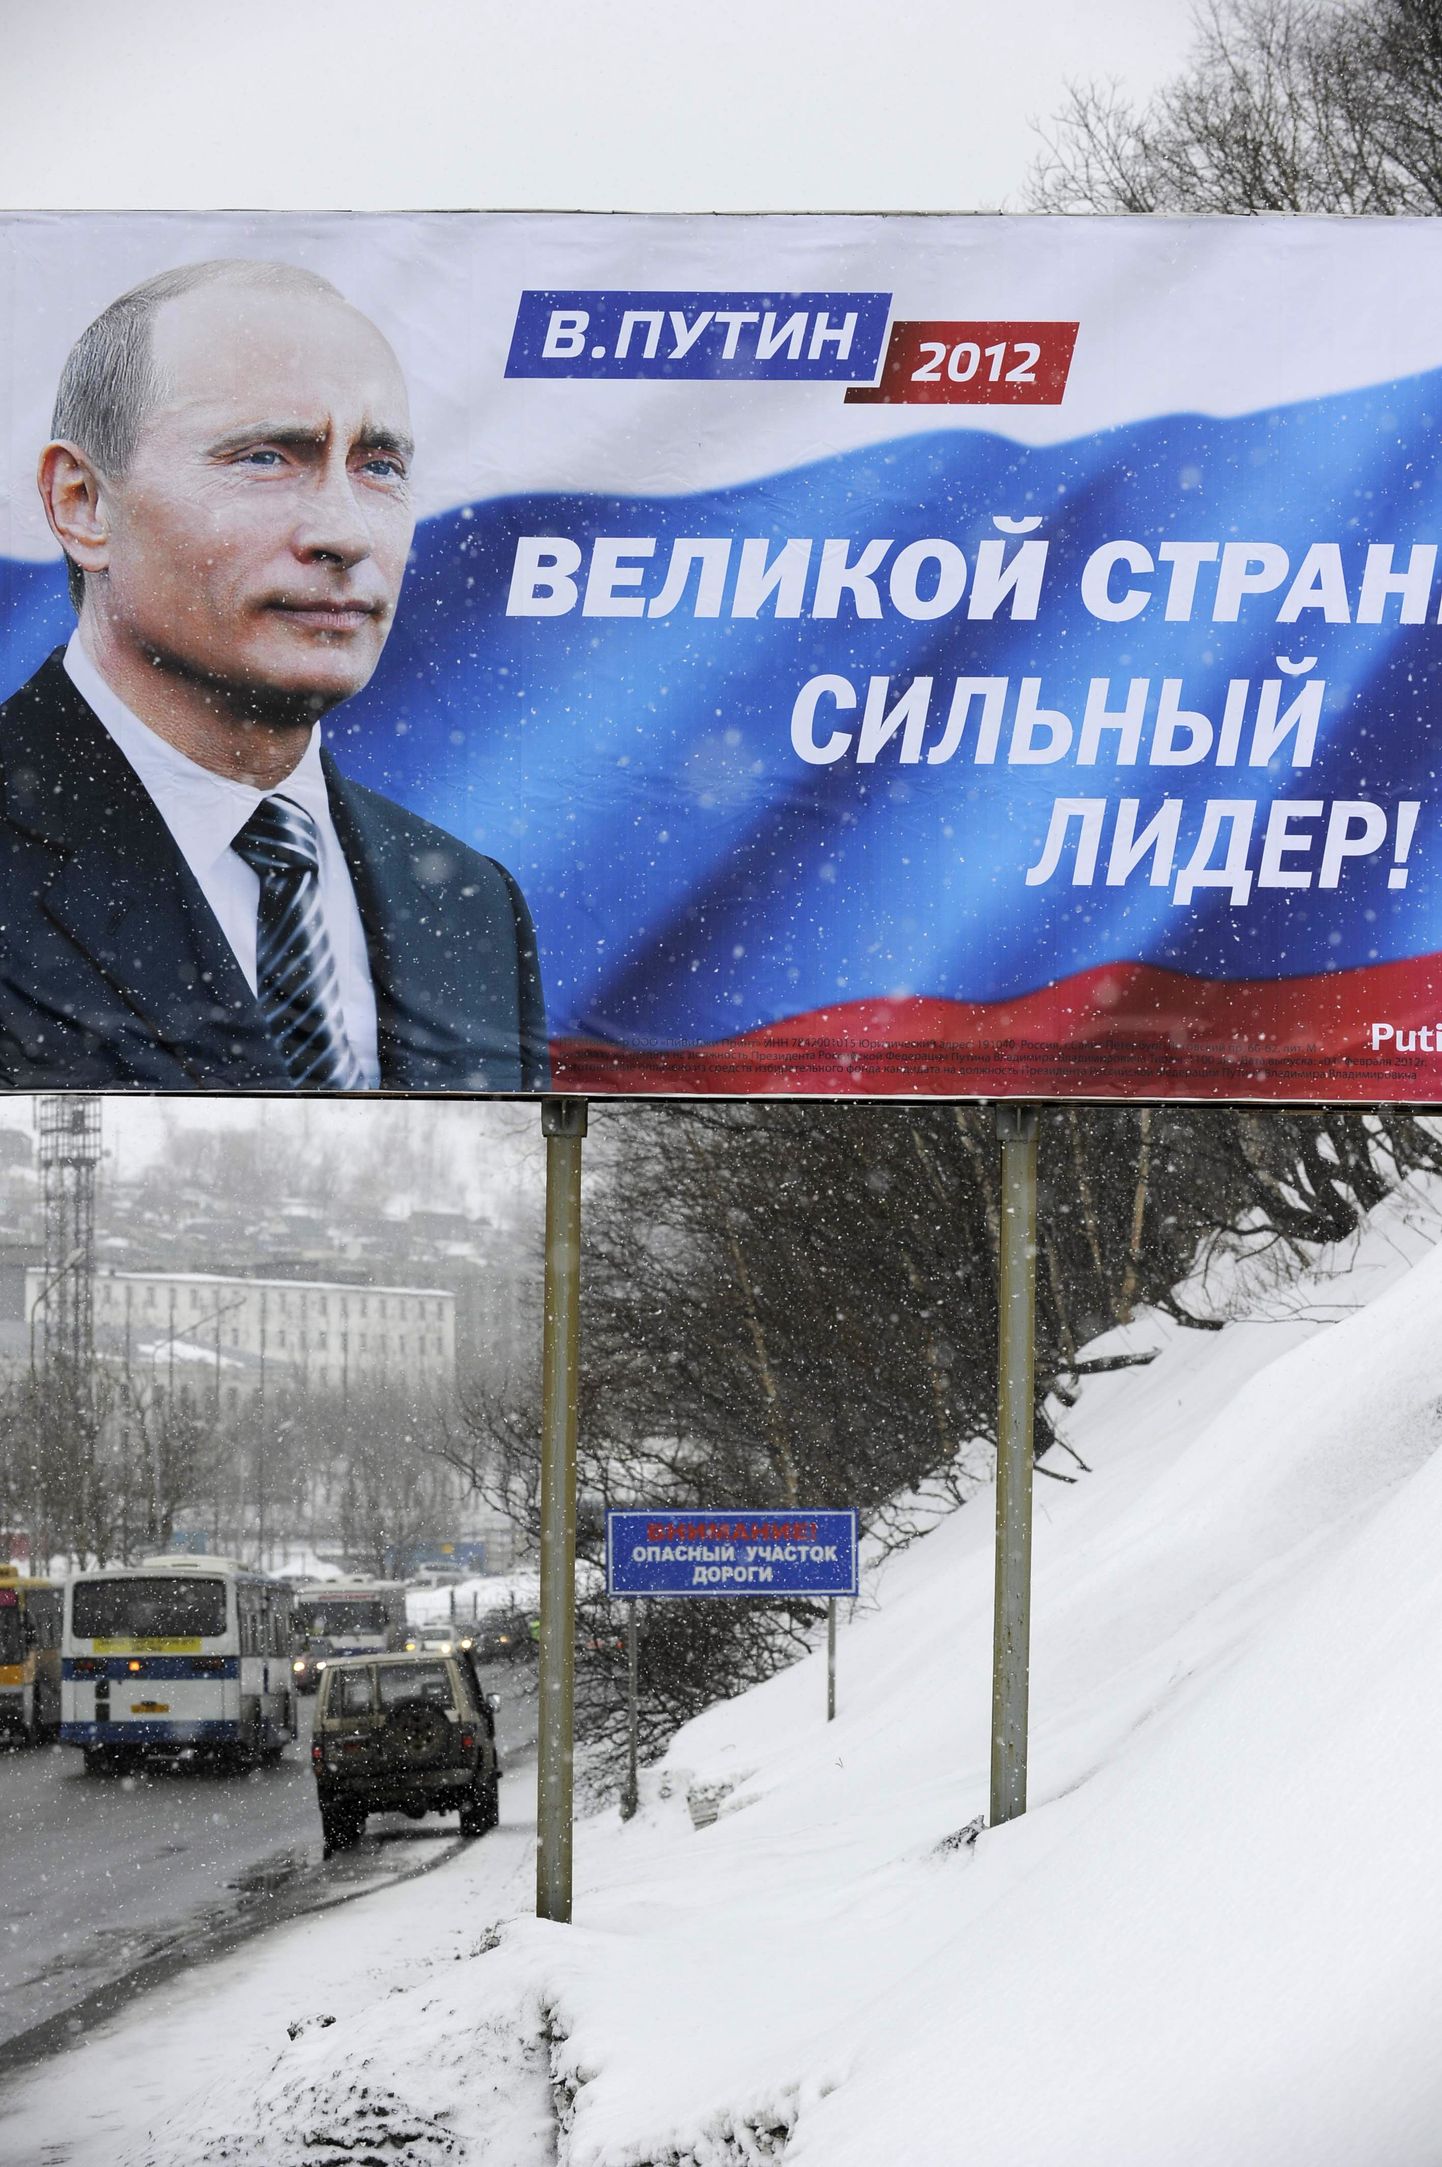 «Suurele riigile tugev liider!» lubab Vladimir Putini valimsplakat.